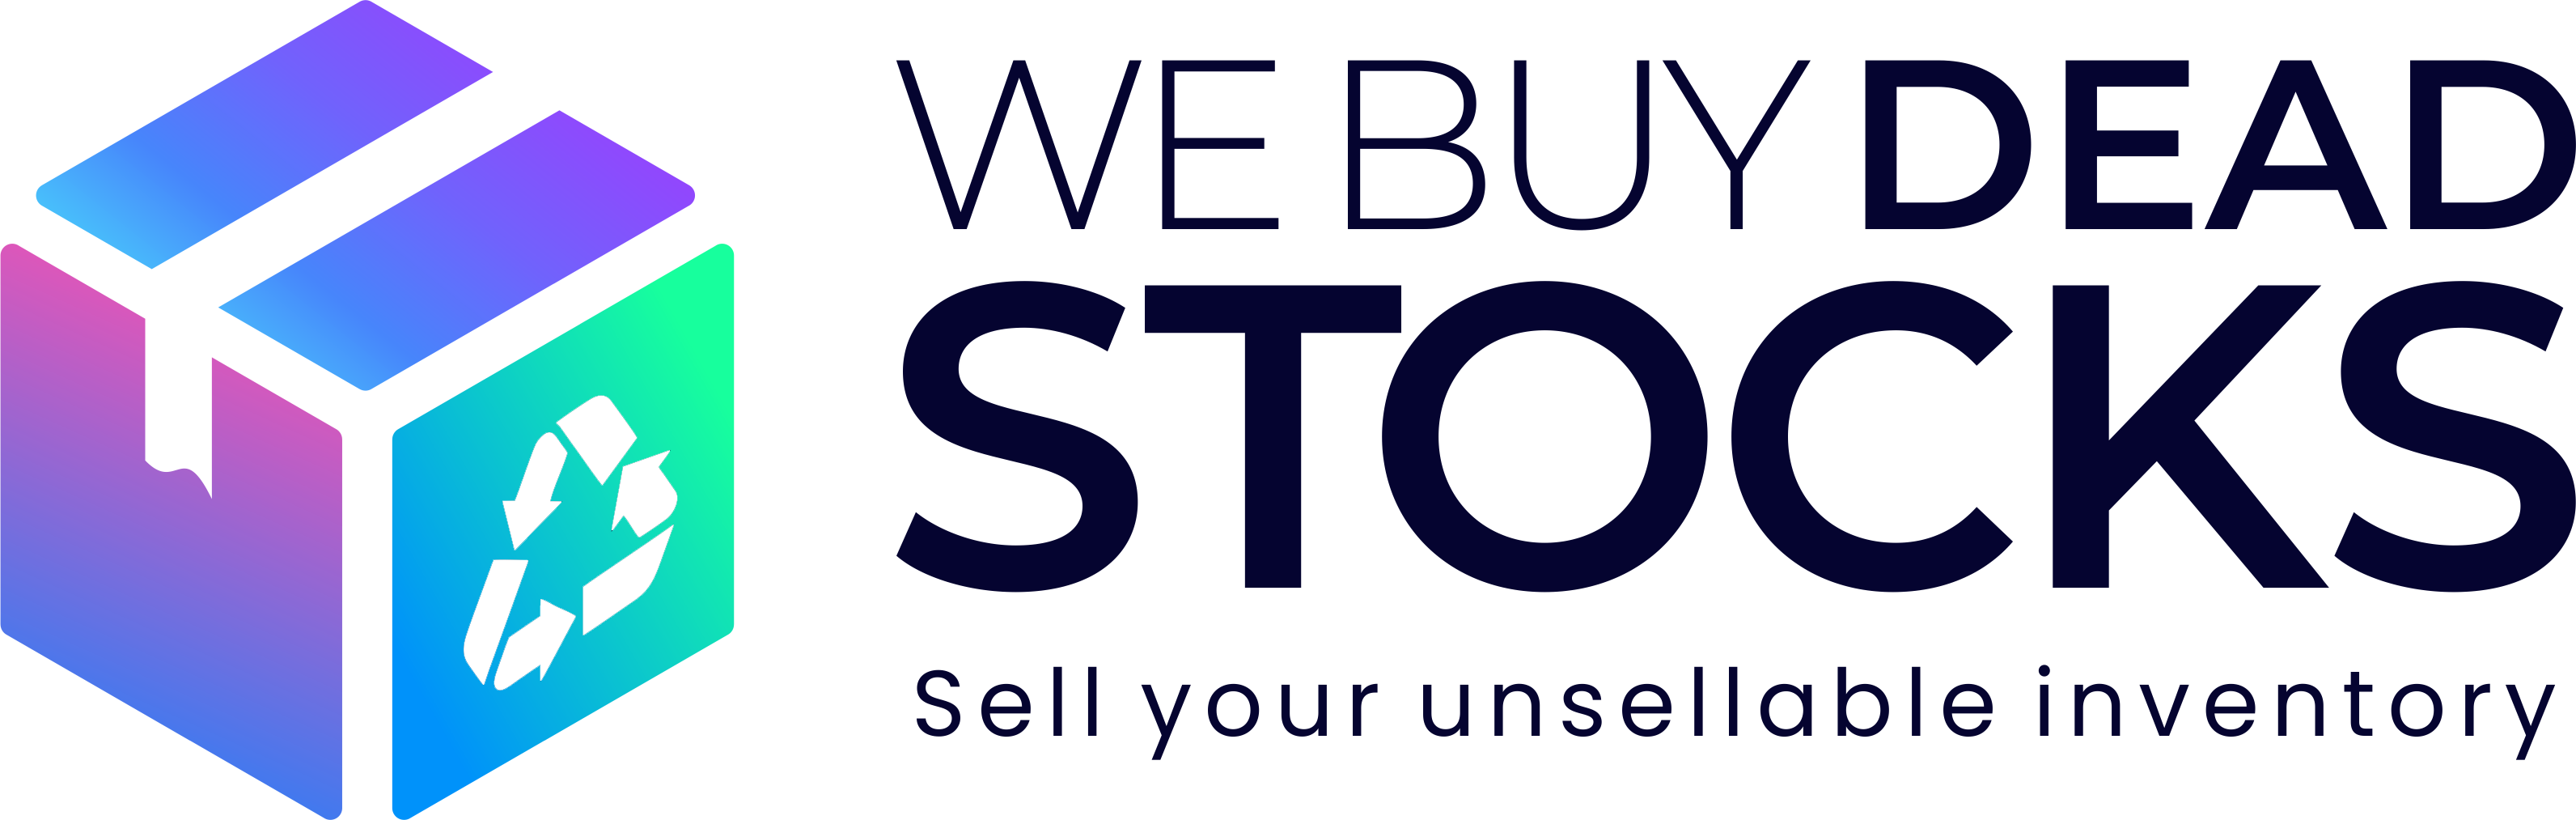 We Buy Dead Stocks Logo